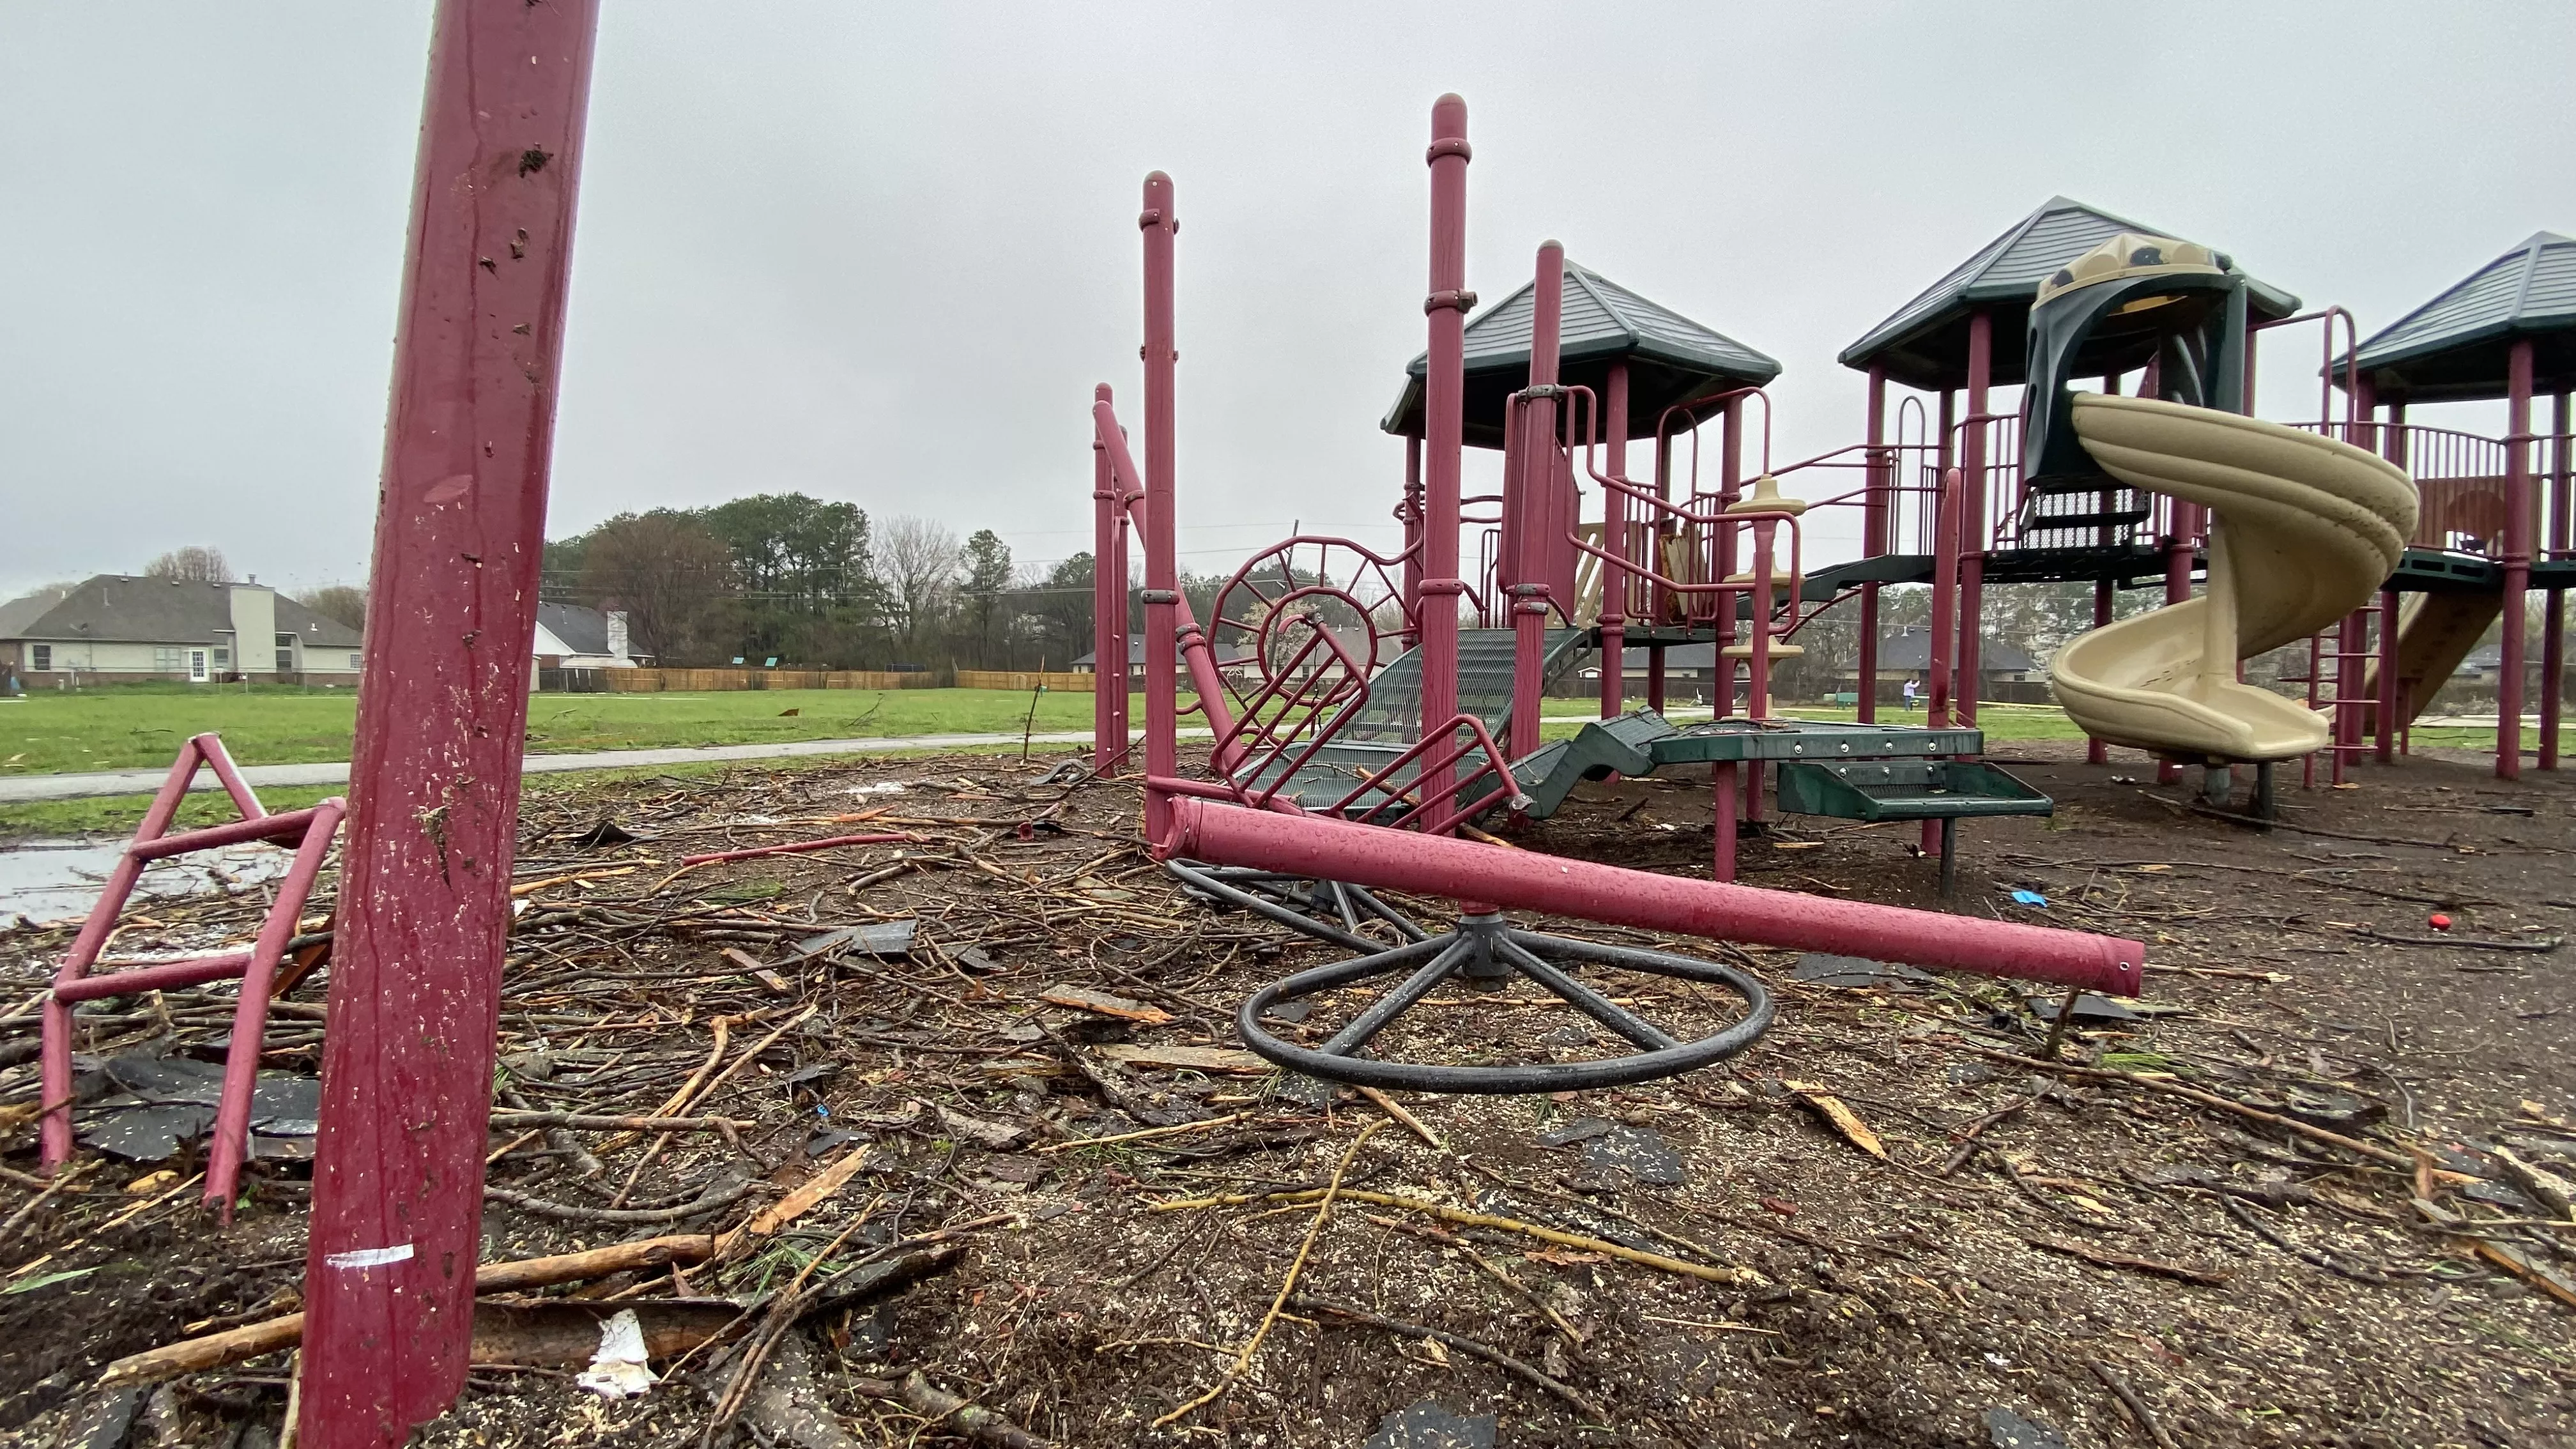 Damaged playground equipment